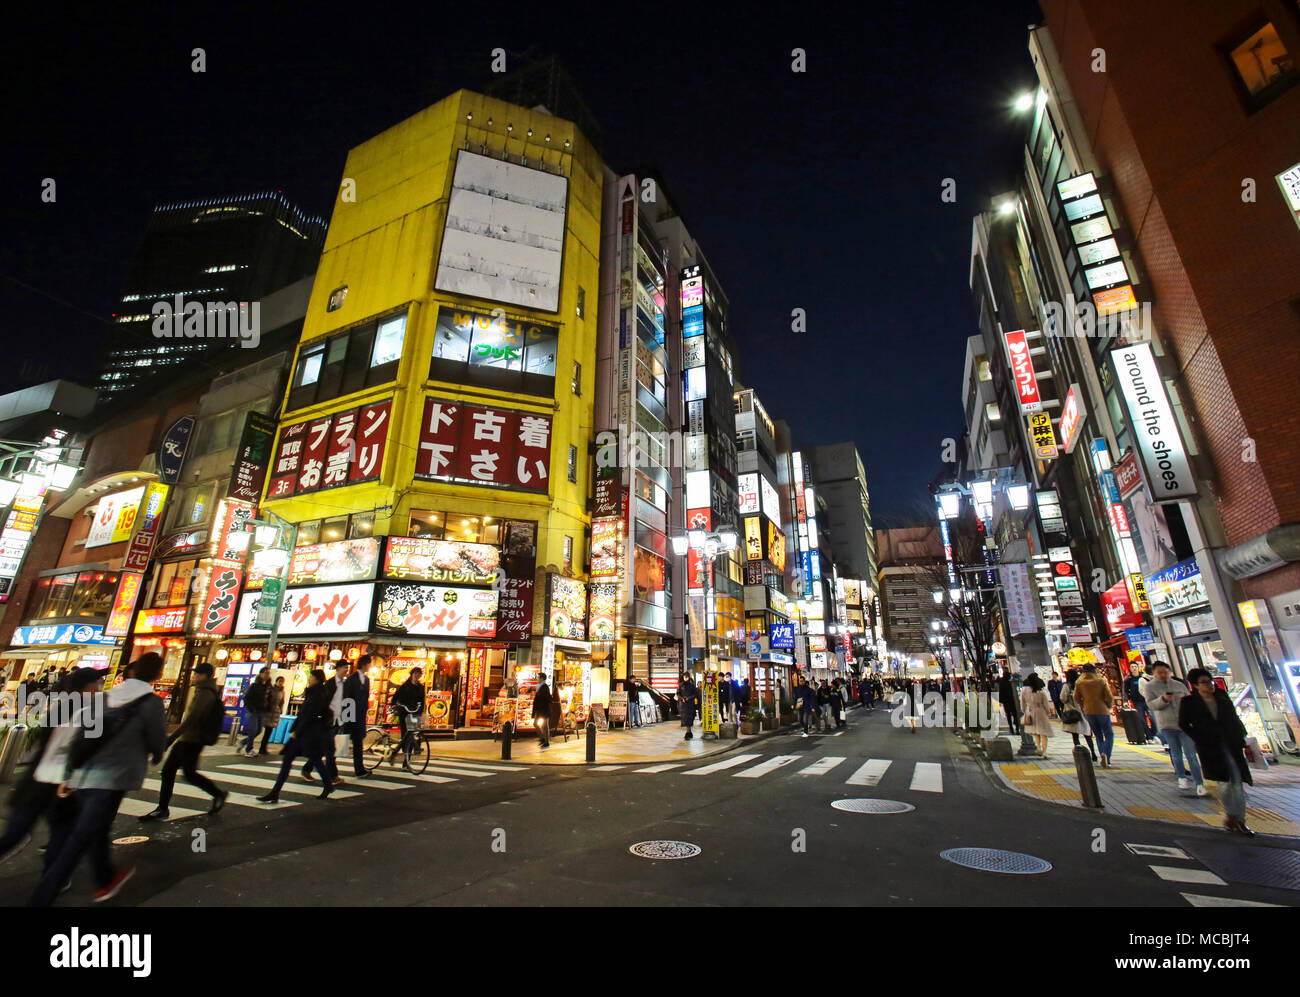 Street con colorate insegne pubblicitarie, negozi, ristoranti e bar, Vista notte, quartiere di Shinjuku a Tokyo, Giappone Foto Stock